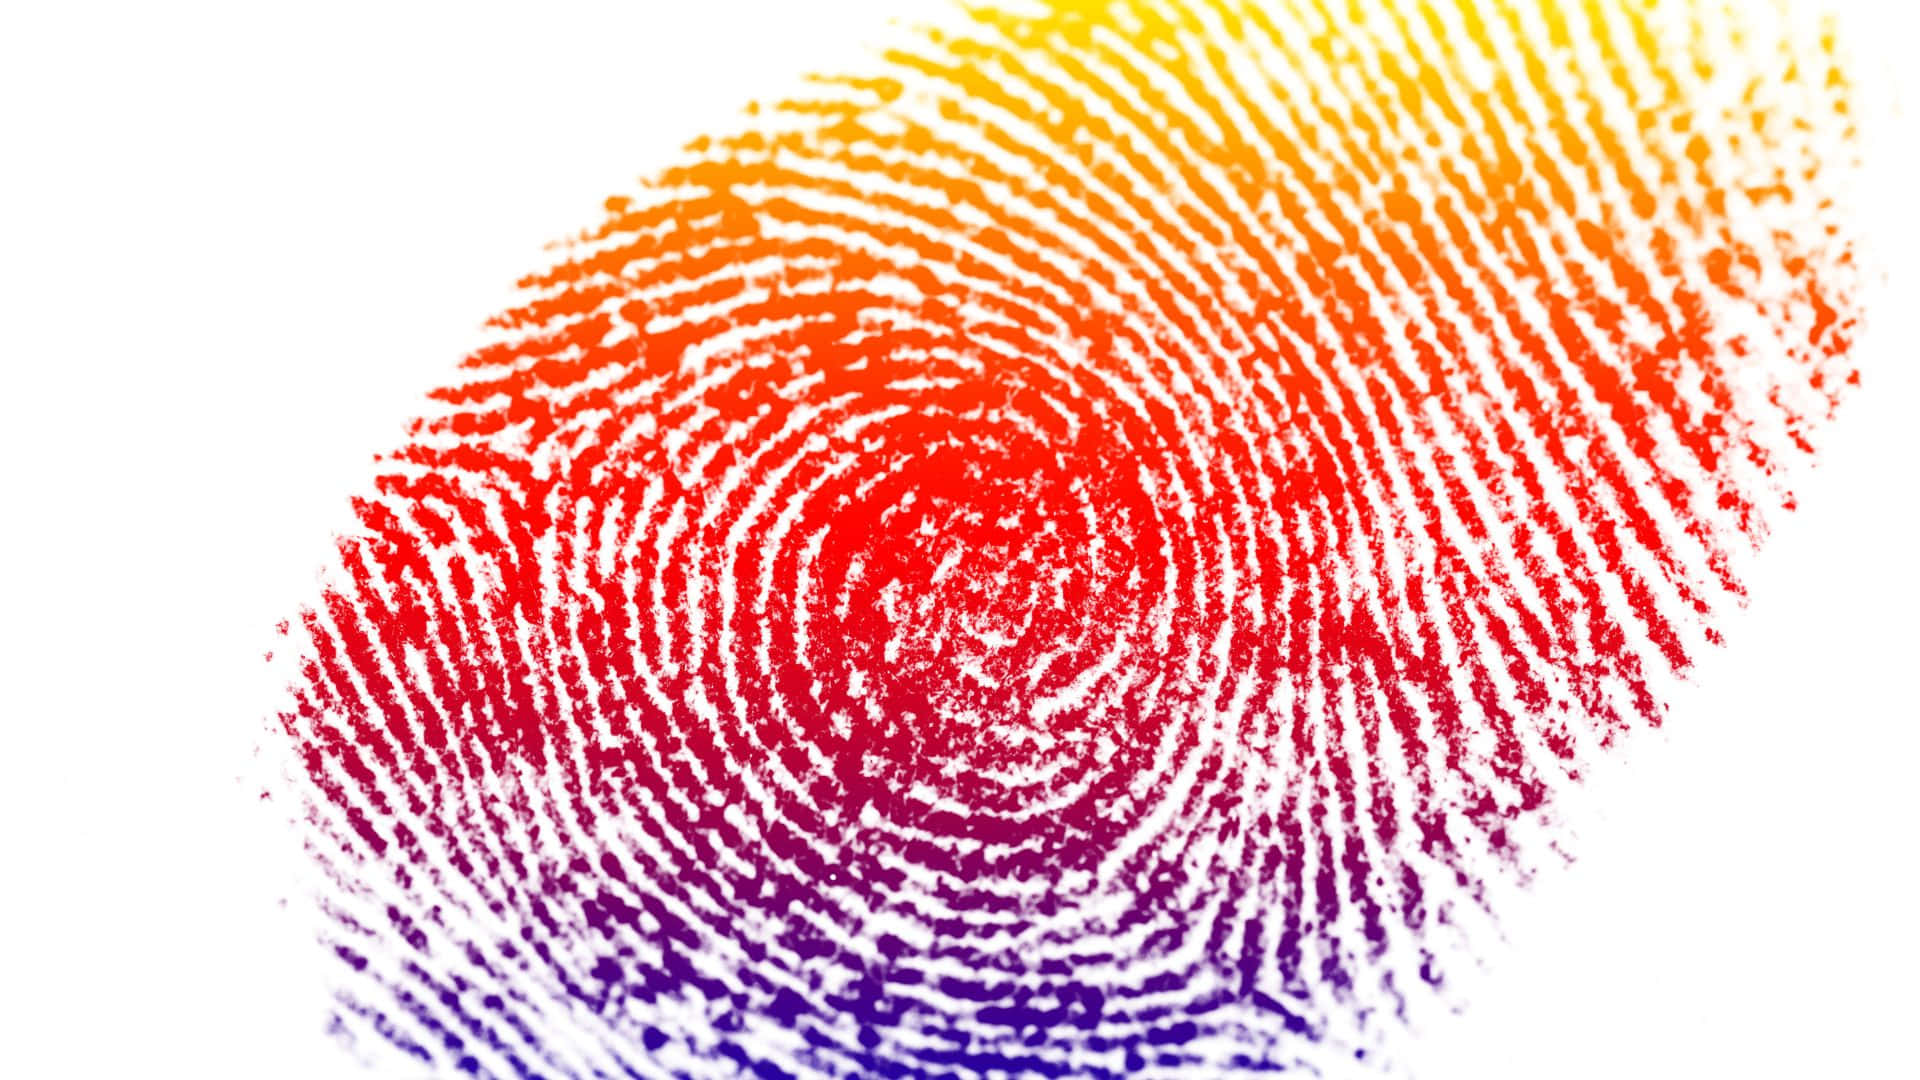 Unique Fingerprint Pattern on a Dark Surface